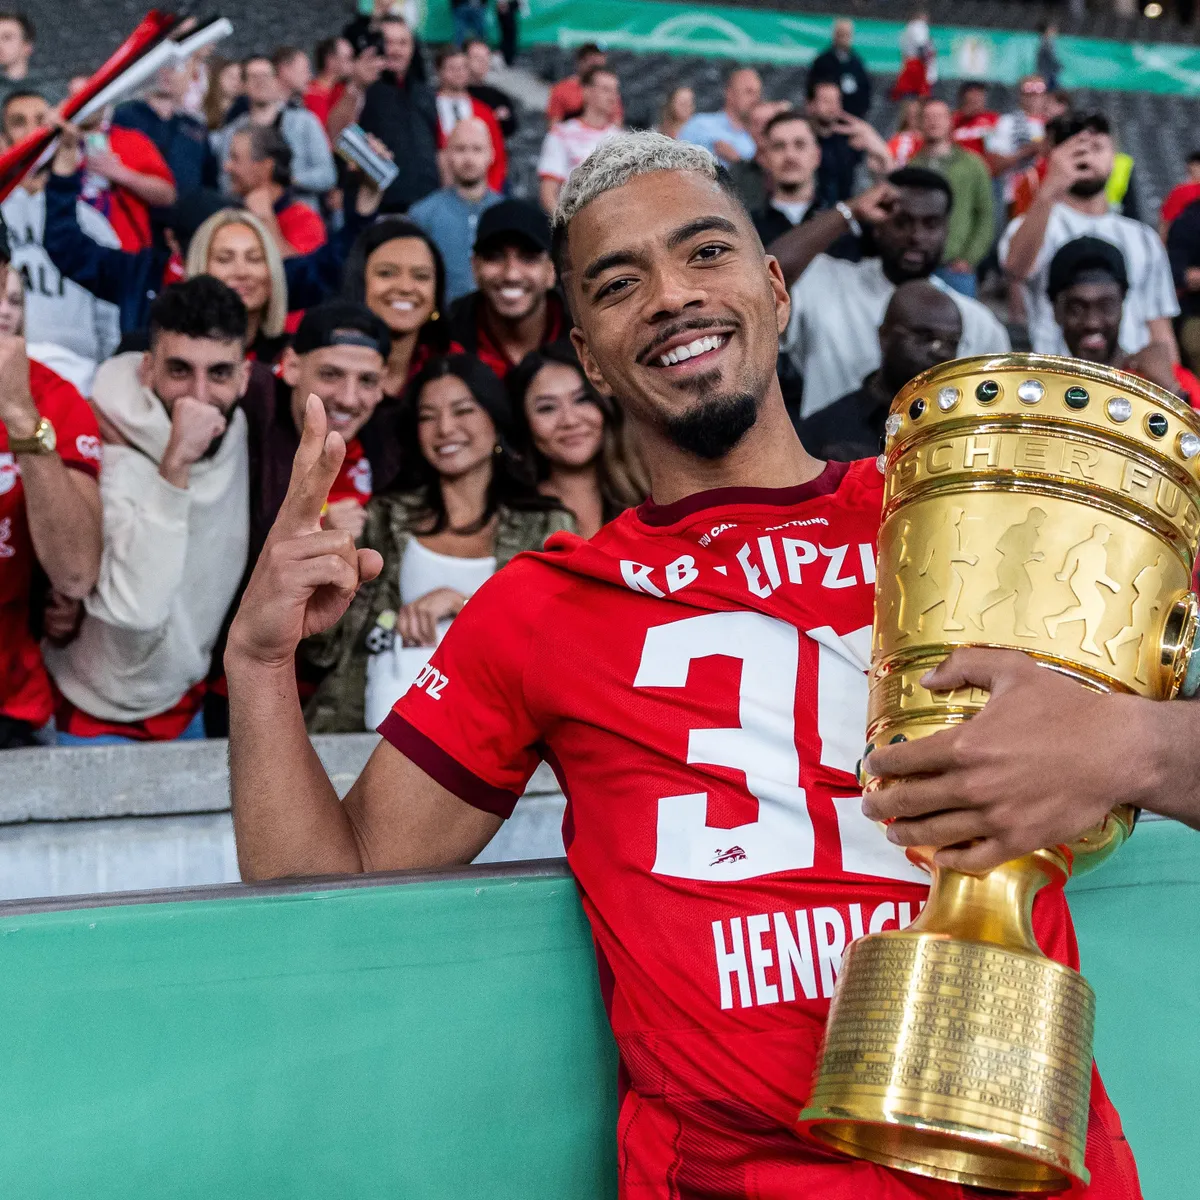 Benni Henrichs mit dem Pokal nach dem Erfolg 2023.